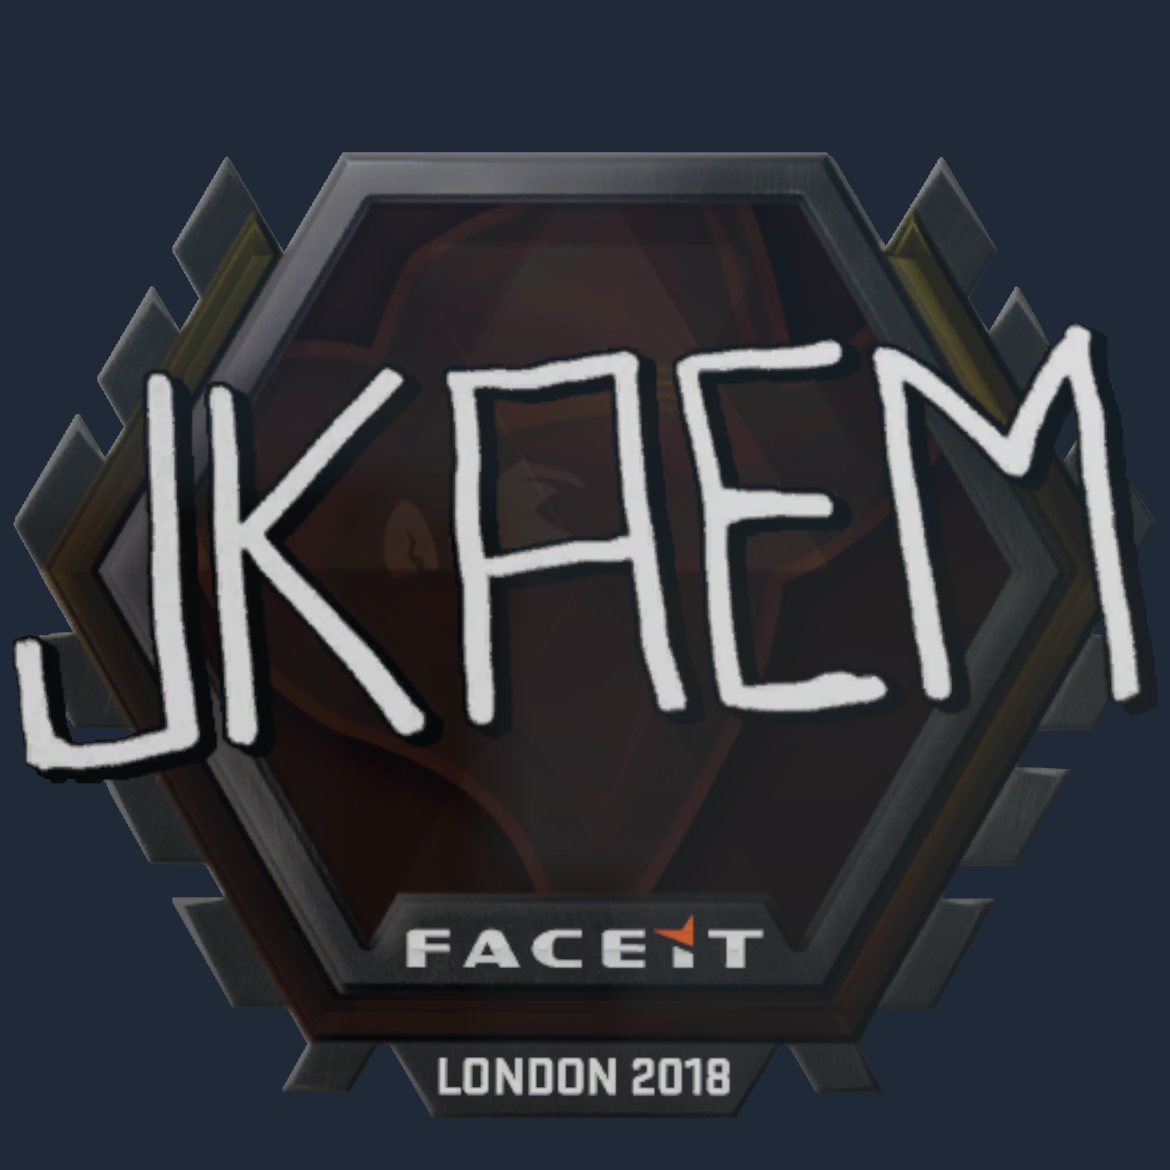 Sticker | jkaem | London 2018 Screenshot